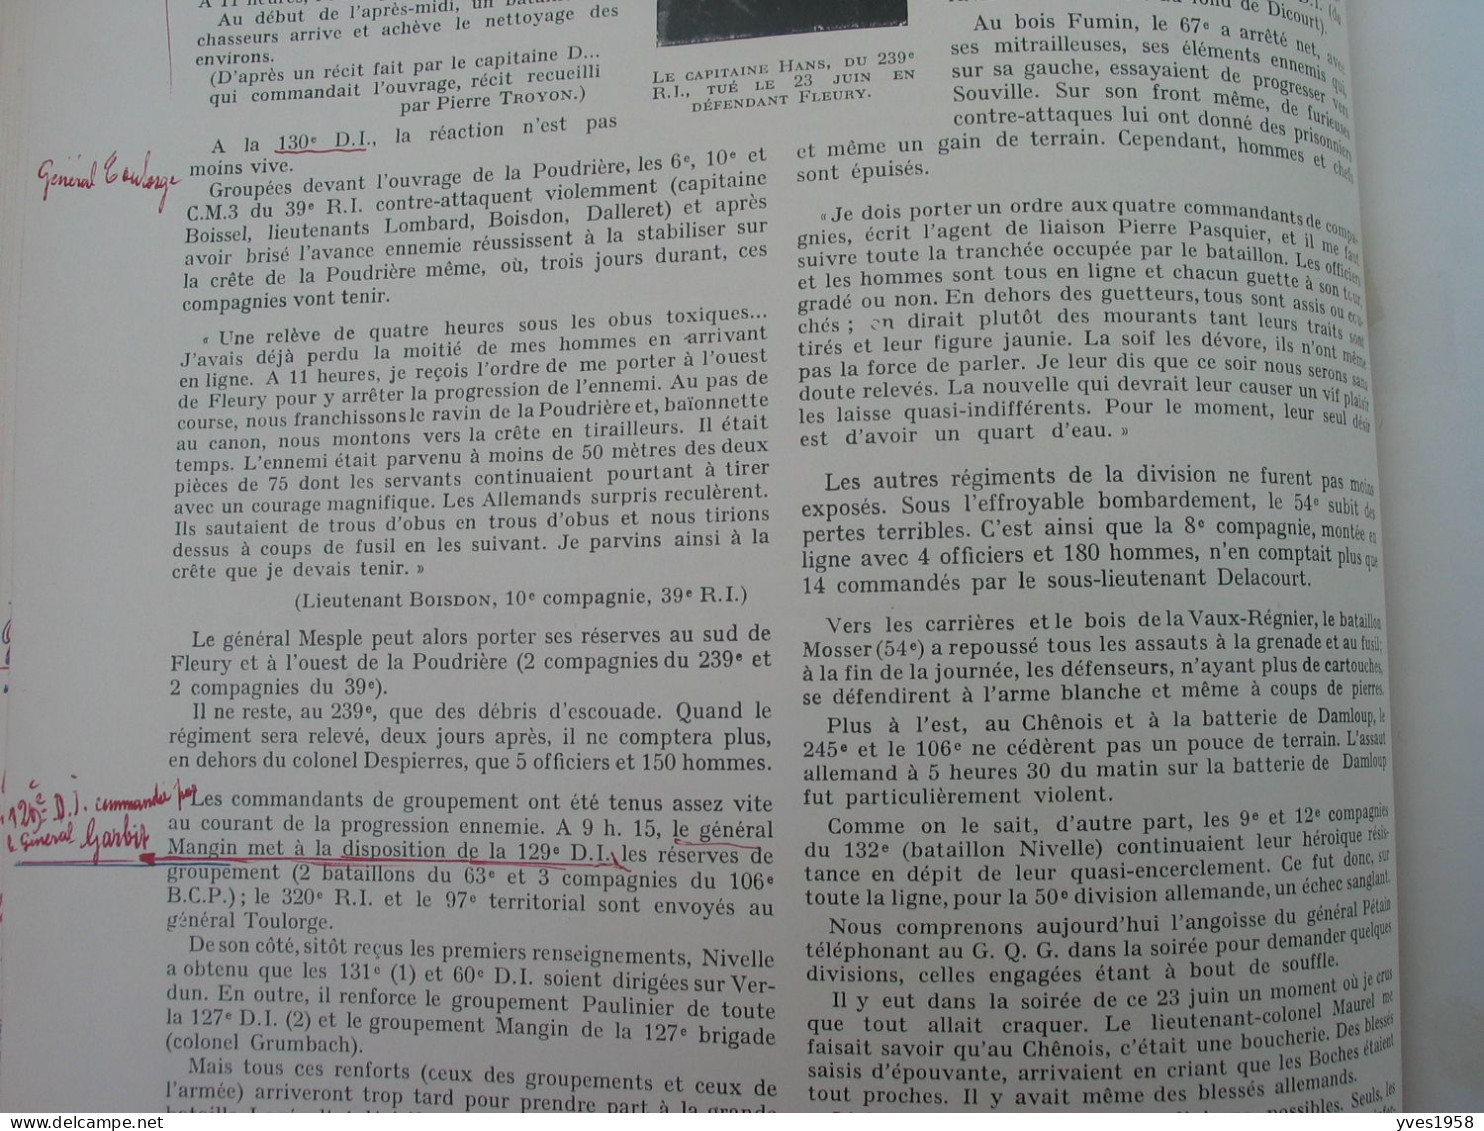 VERDUN 1914-1918,Livre d'un poilu ,avec Documents et Nombreuses Annotations sur les Situations Vécues par le Poilu.